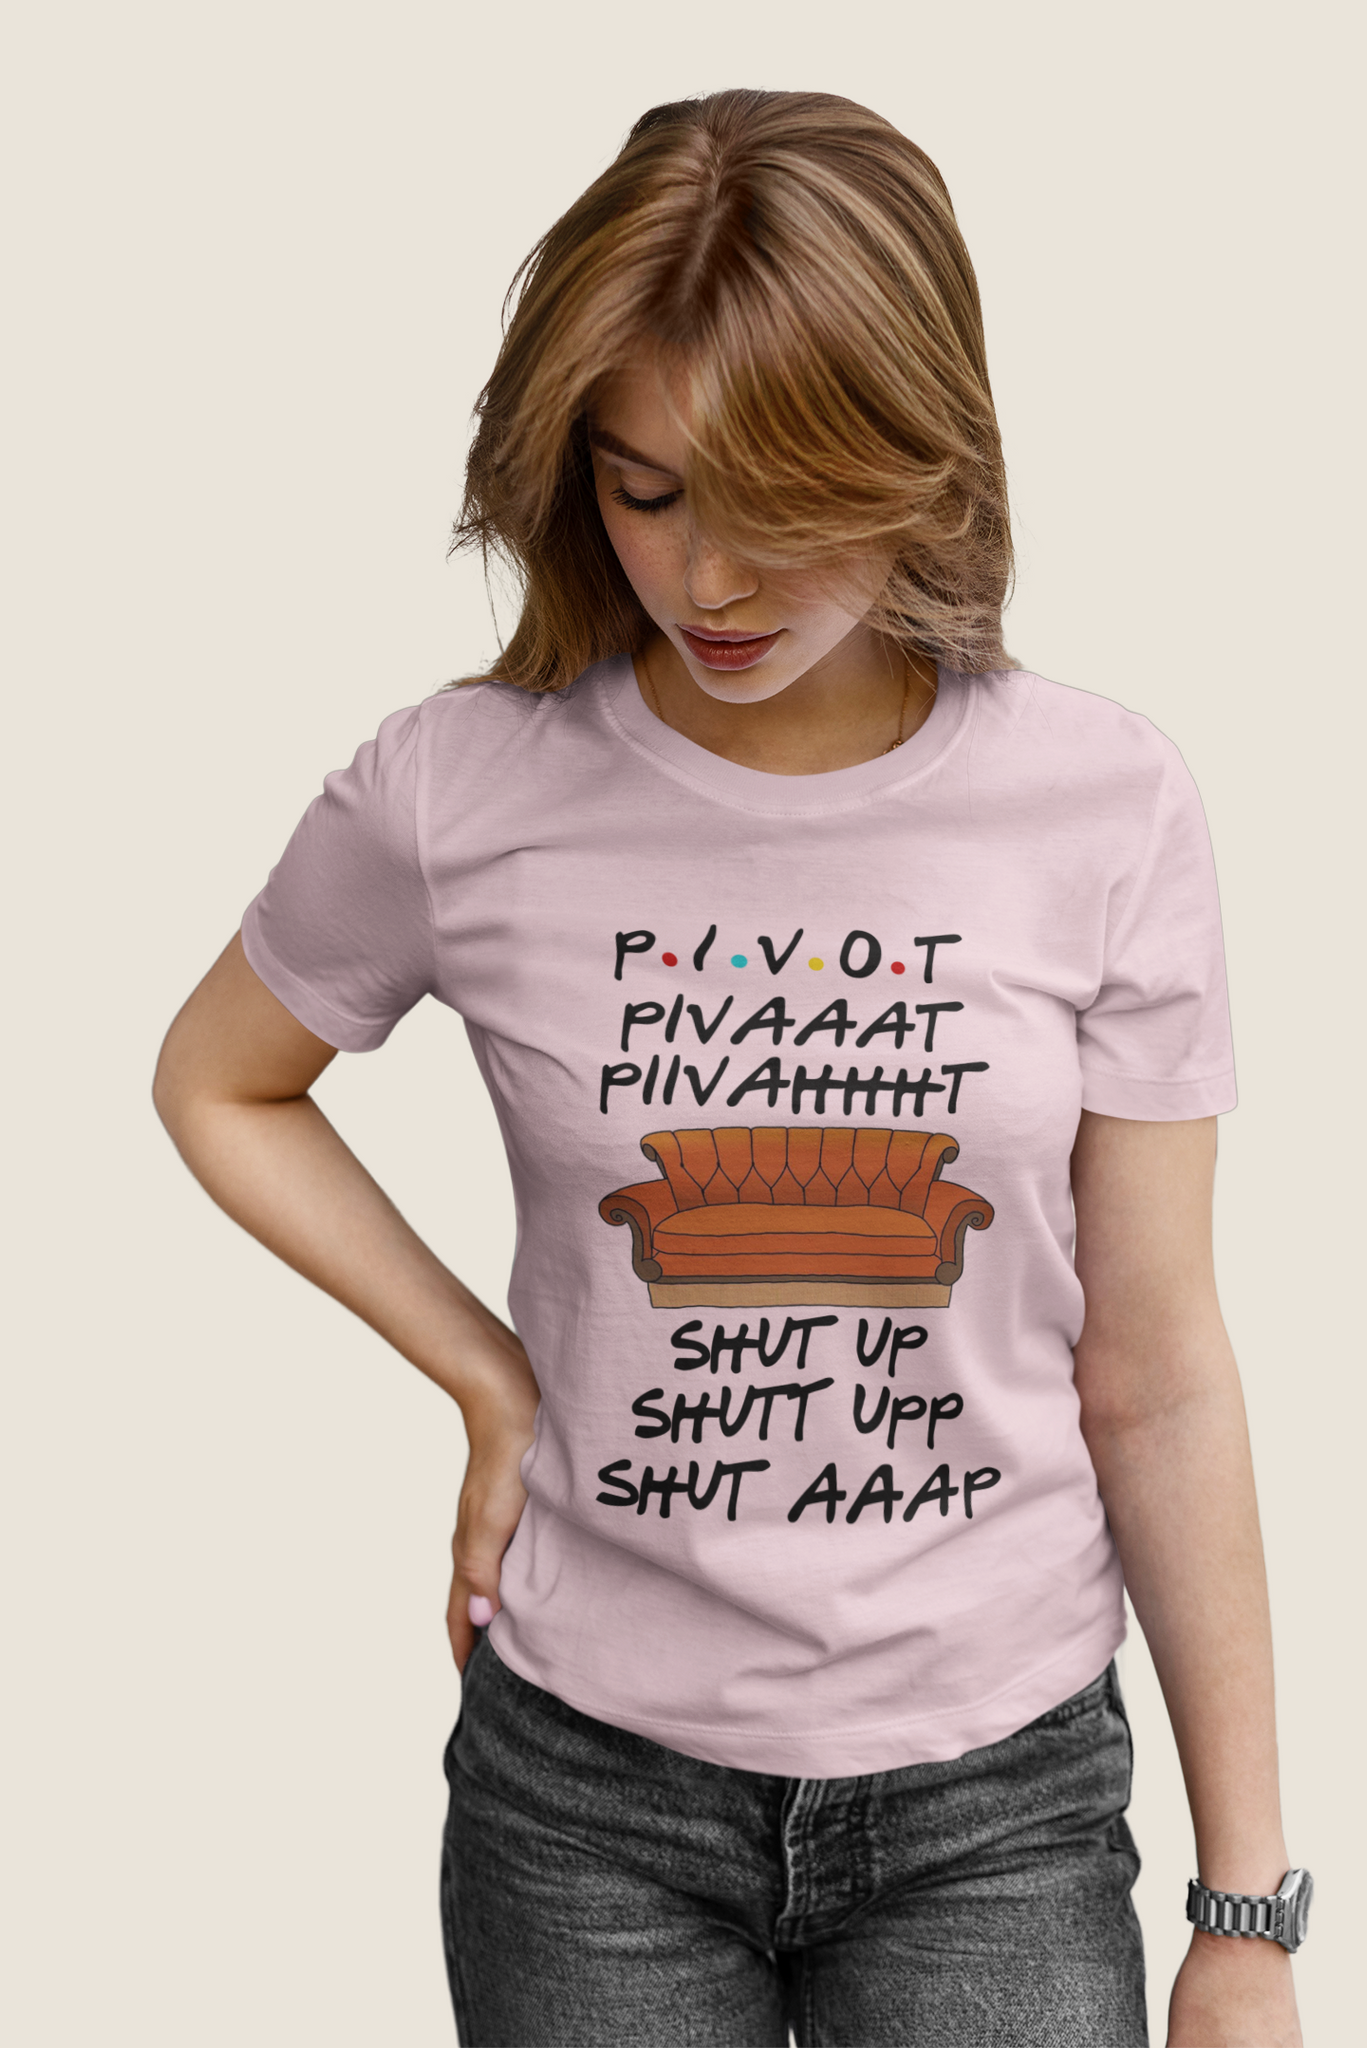 Friends TV Show T Shirt, Pivot Pivaaat Shut Up T Shirt